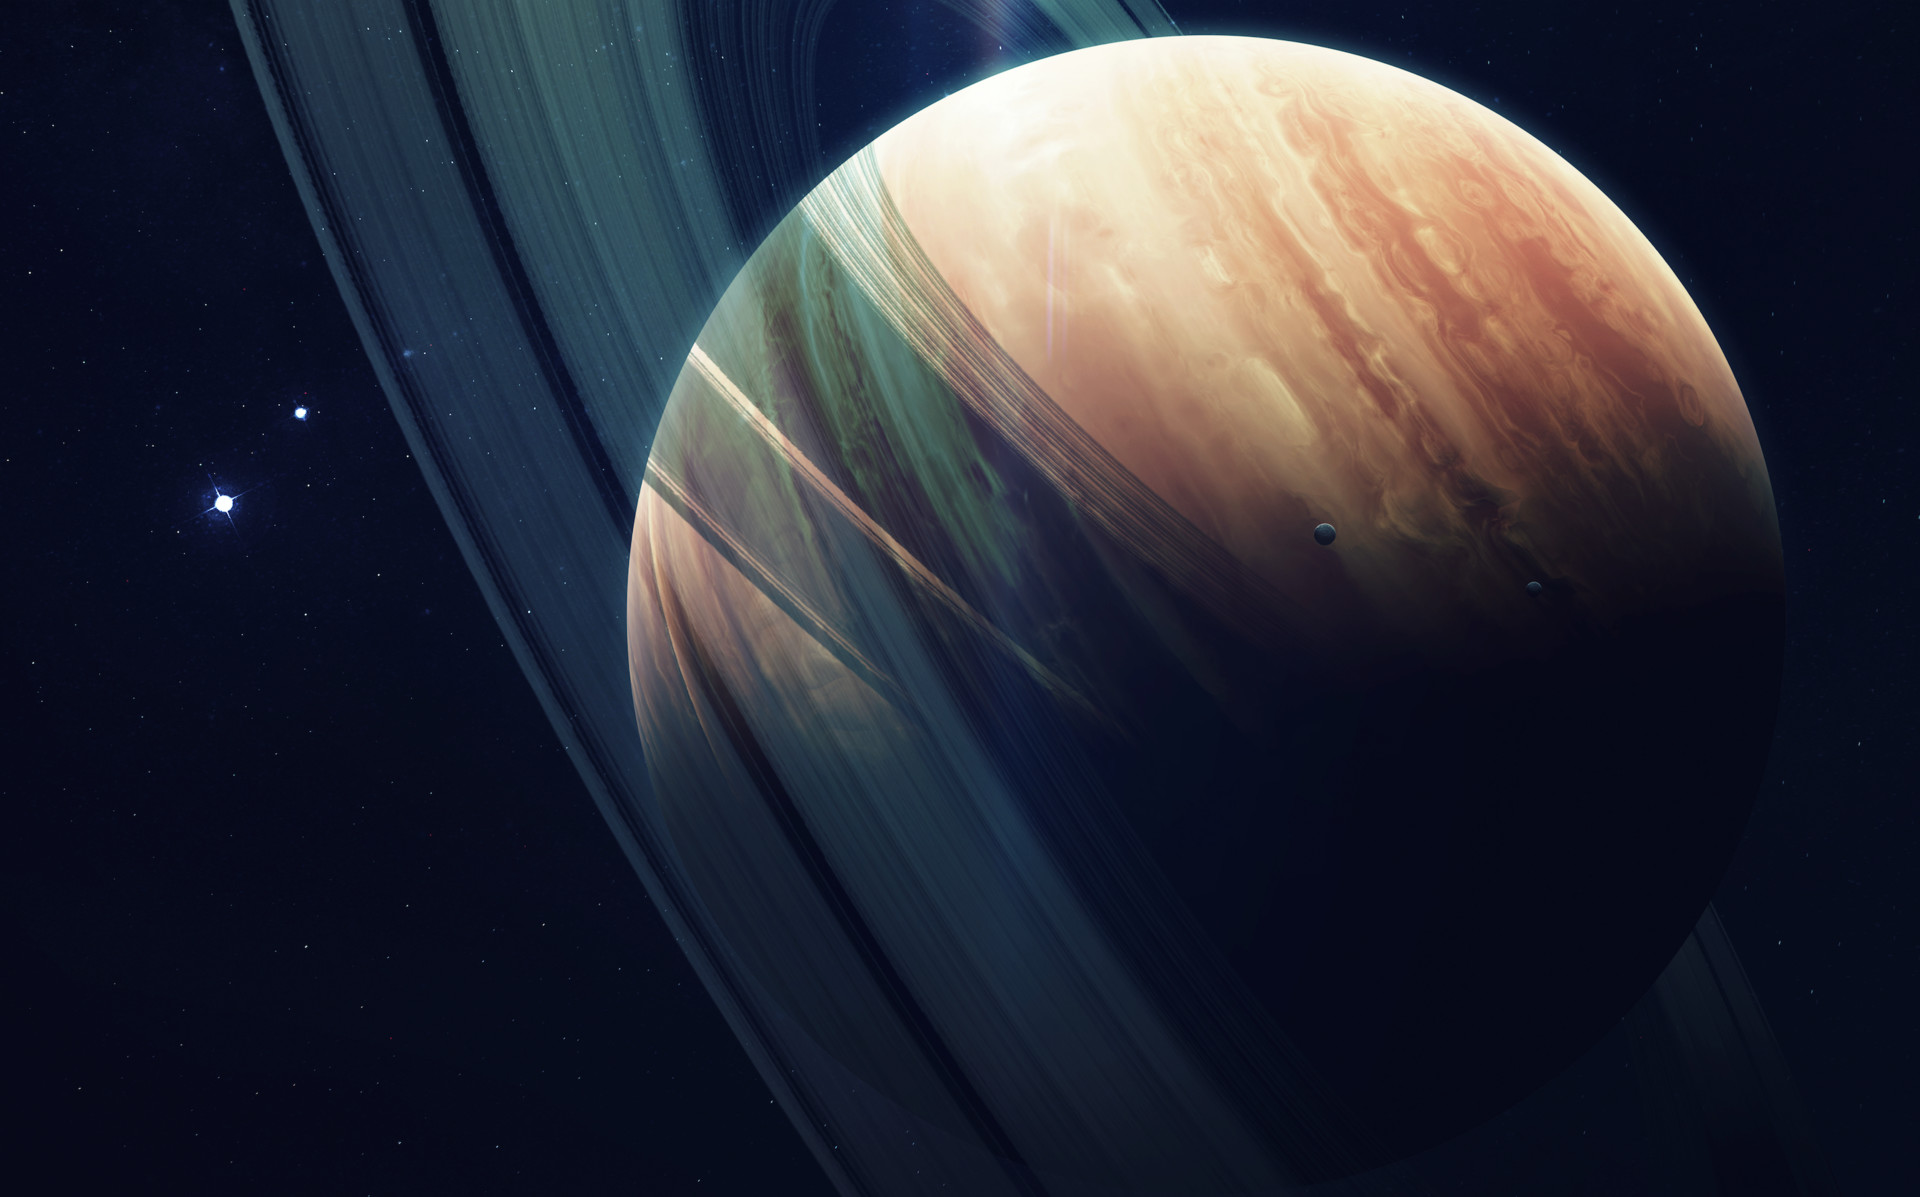 Descarga gratuita de fondo de pantalla para móvil de Ciencia Ficción, Júpiter.